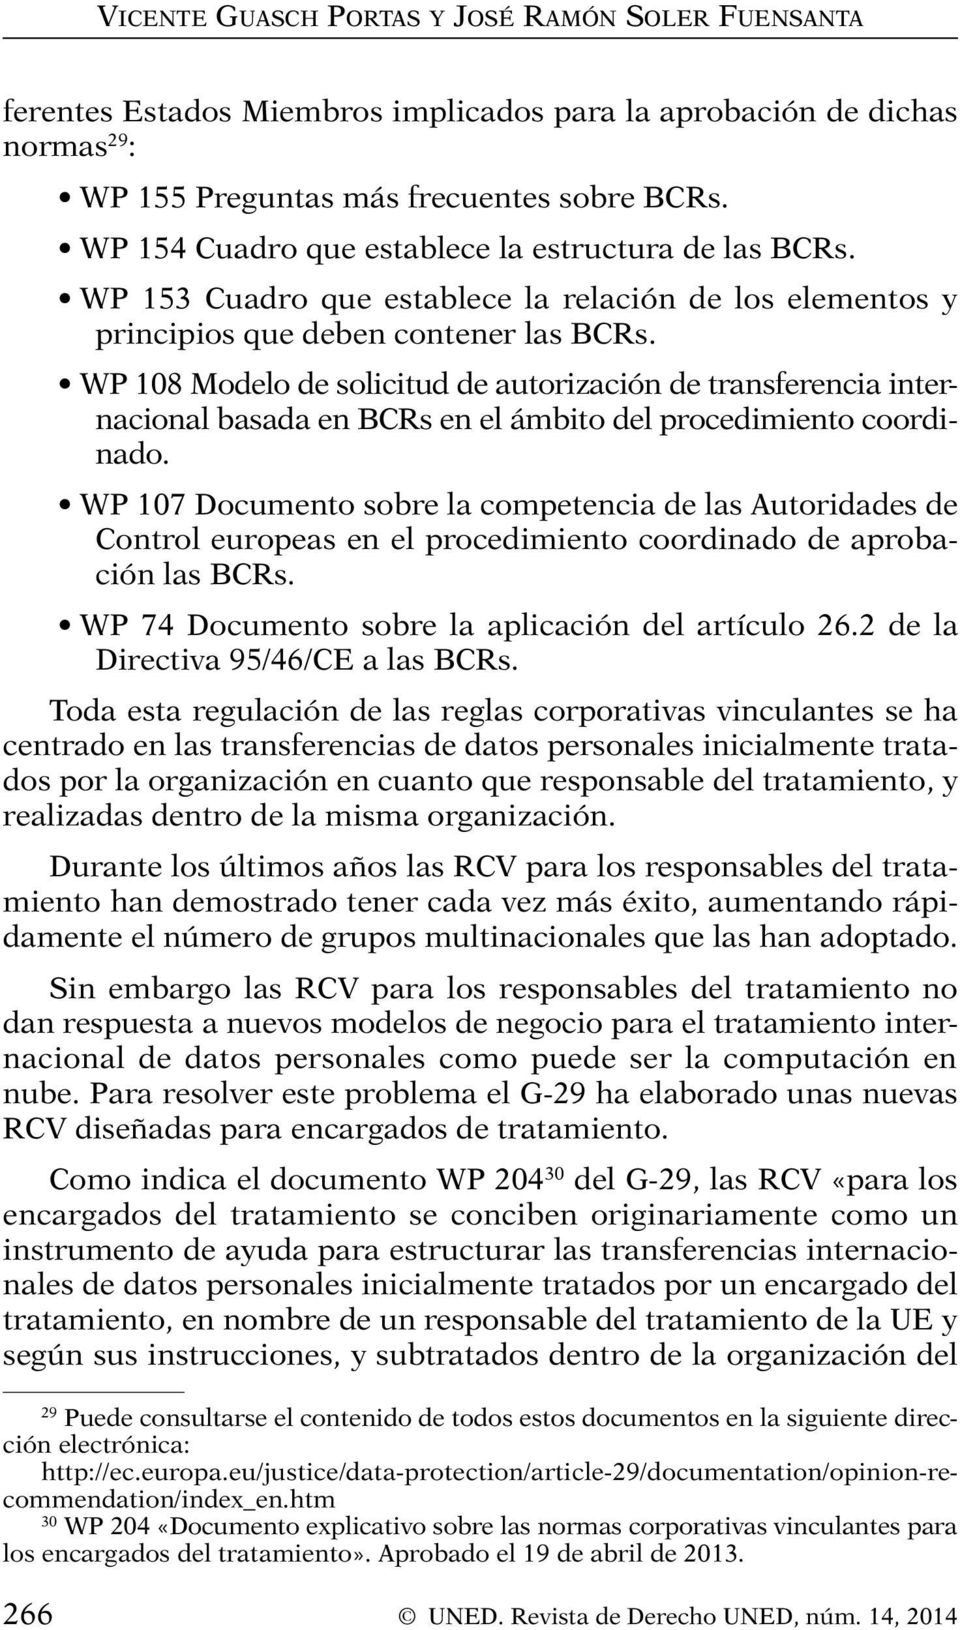 WP 108 Modelo de solicitud de autorización de transferencia internacional basada en BCRs en el ámbito del procedimiento coordinado.